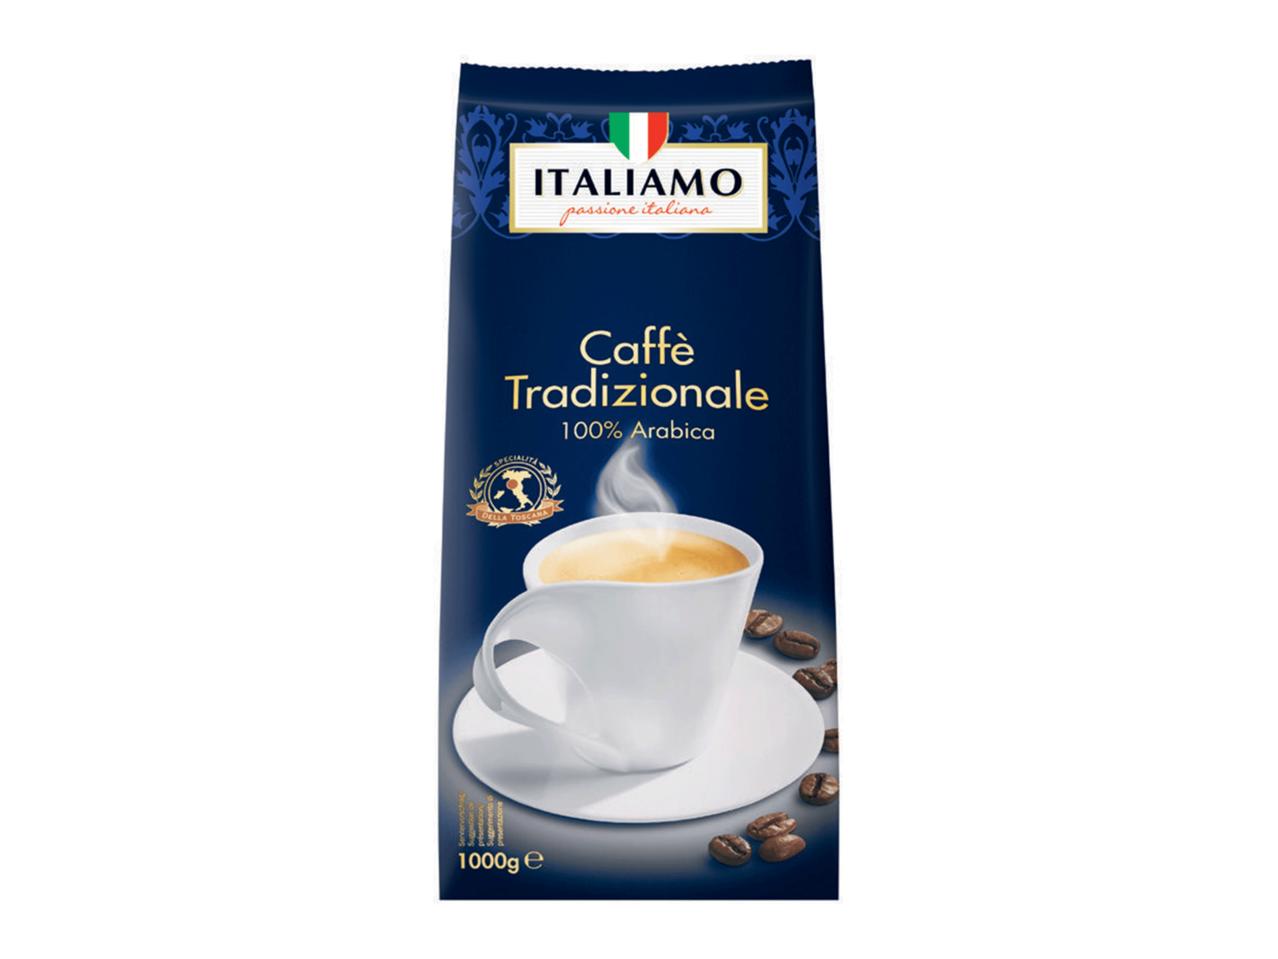 ITALIAMO Caffè Tradizionale 100% Arabica